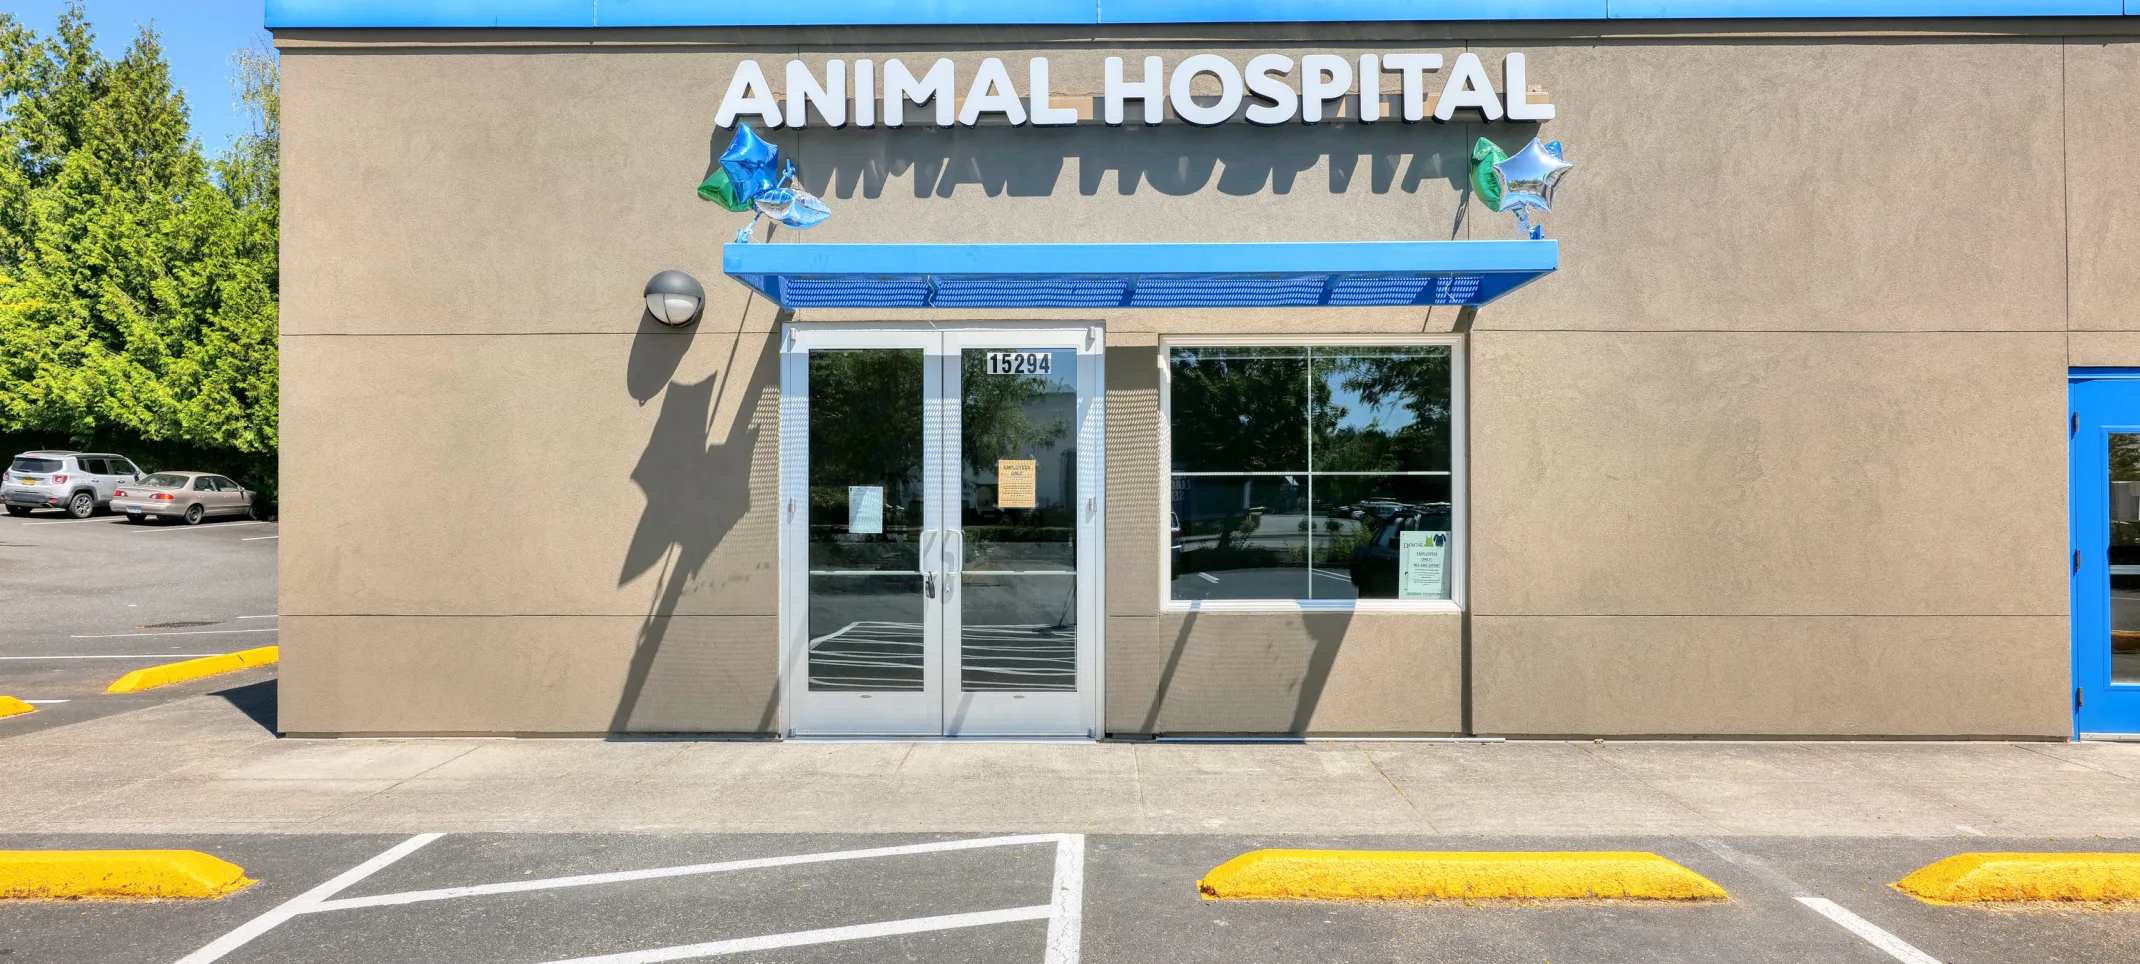 Tigard Animal Hospital in Tigard, Oregon